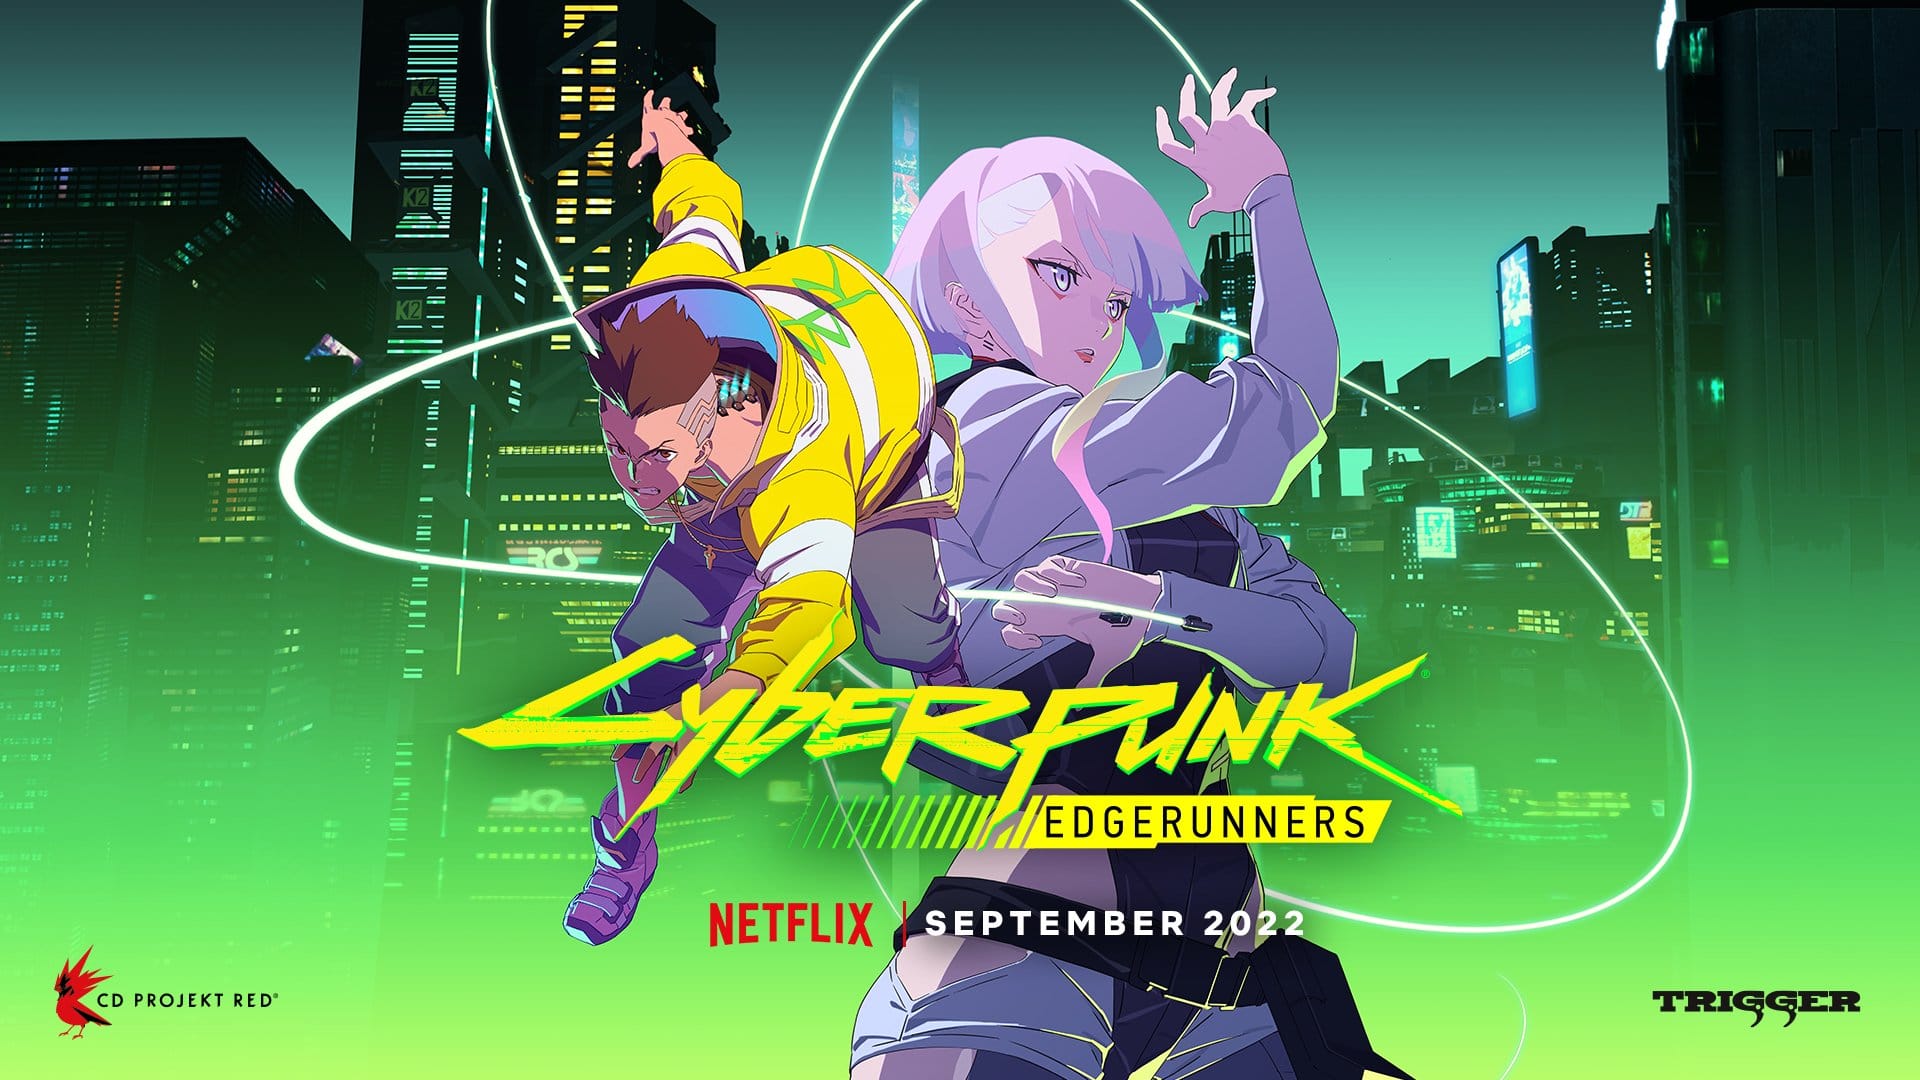 Cyberpunk 2077: New information about the Netflix series Edgerunners